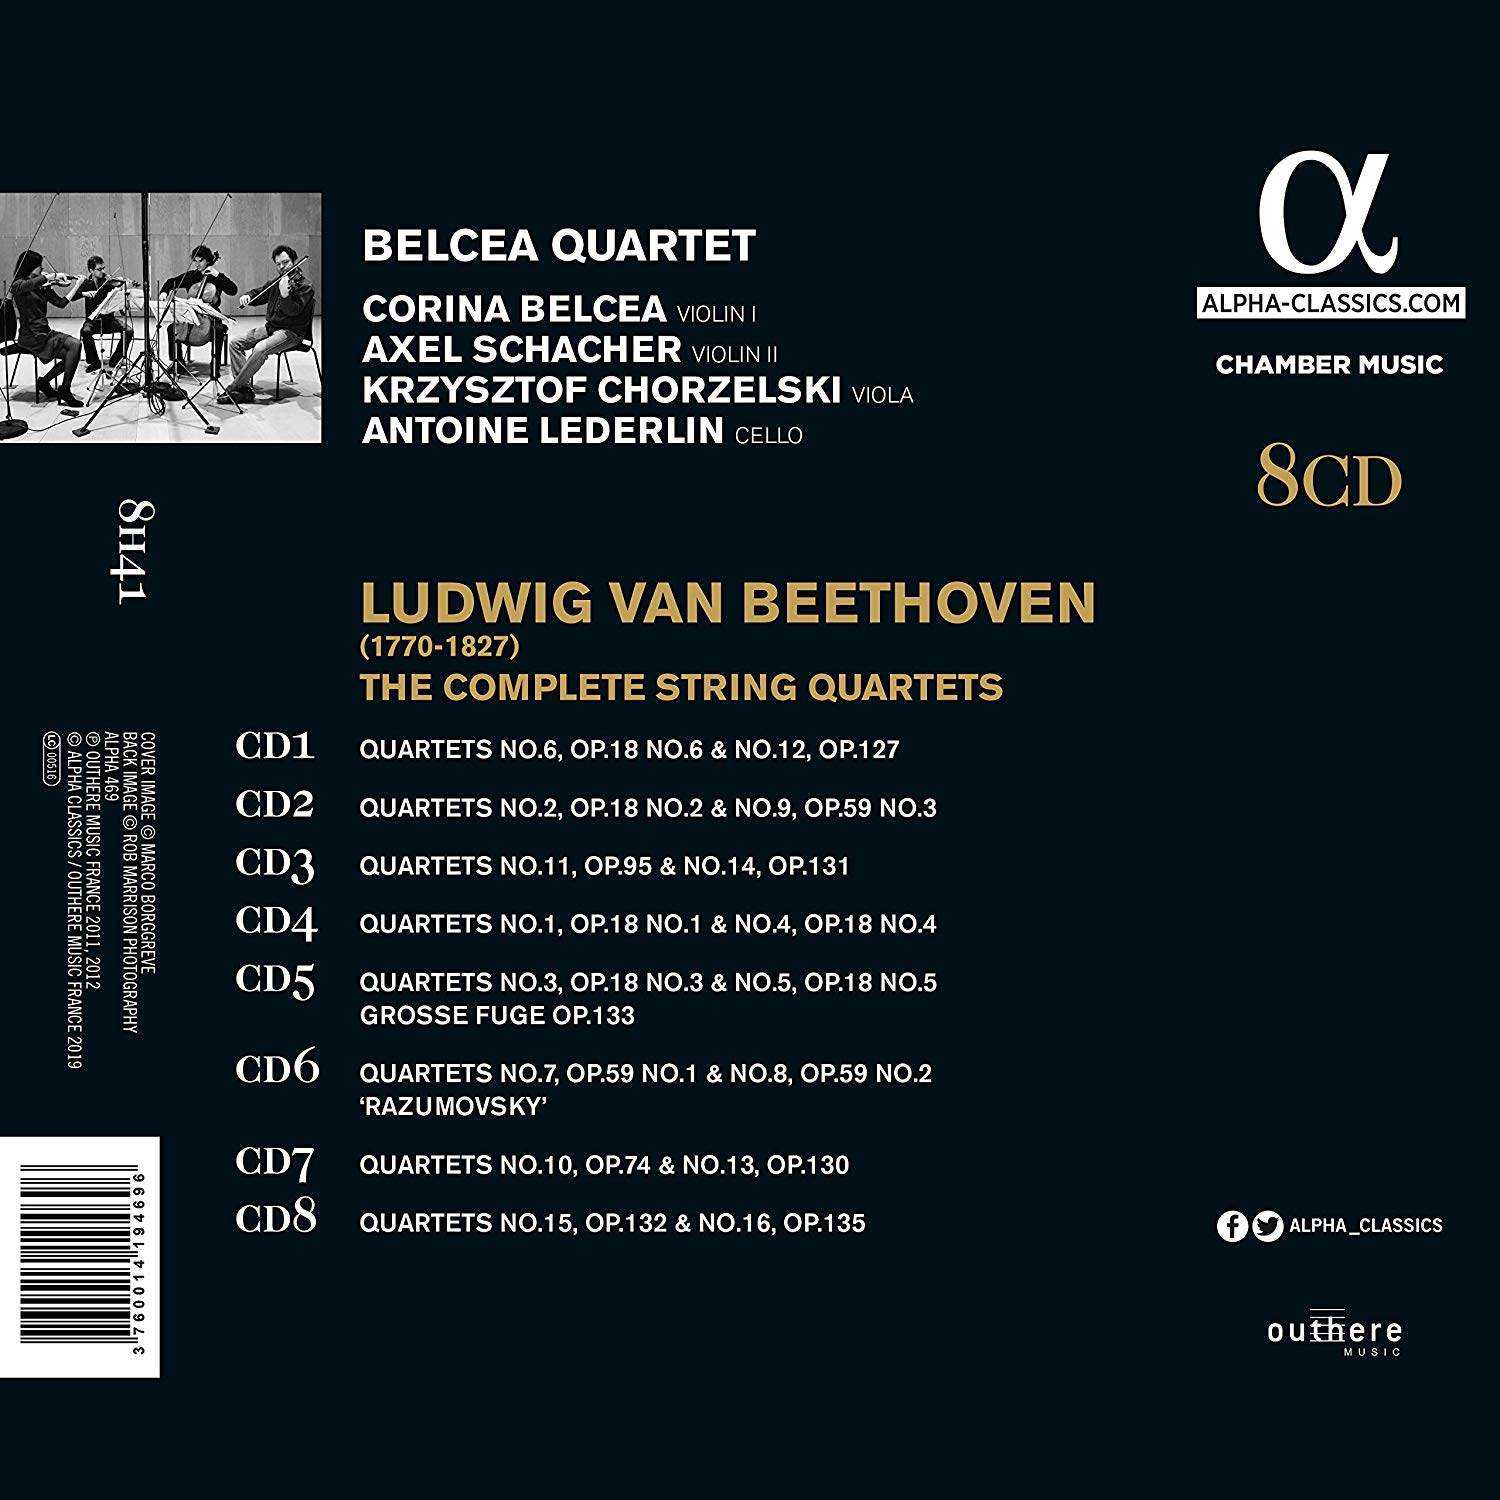 Belcea Quartet 베토벤: 현악 사중주 전곡 - 벨체아 콰르텟 (Beethoven: The Complete String Quartets)